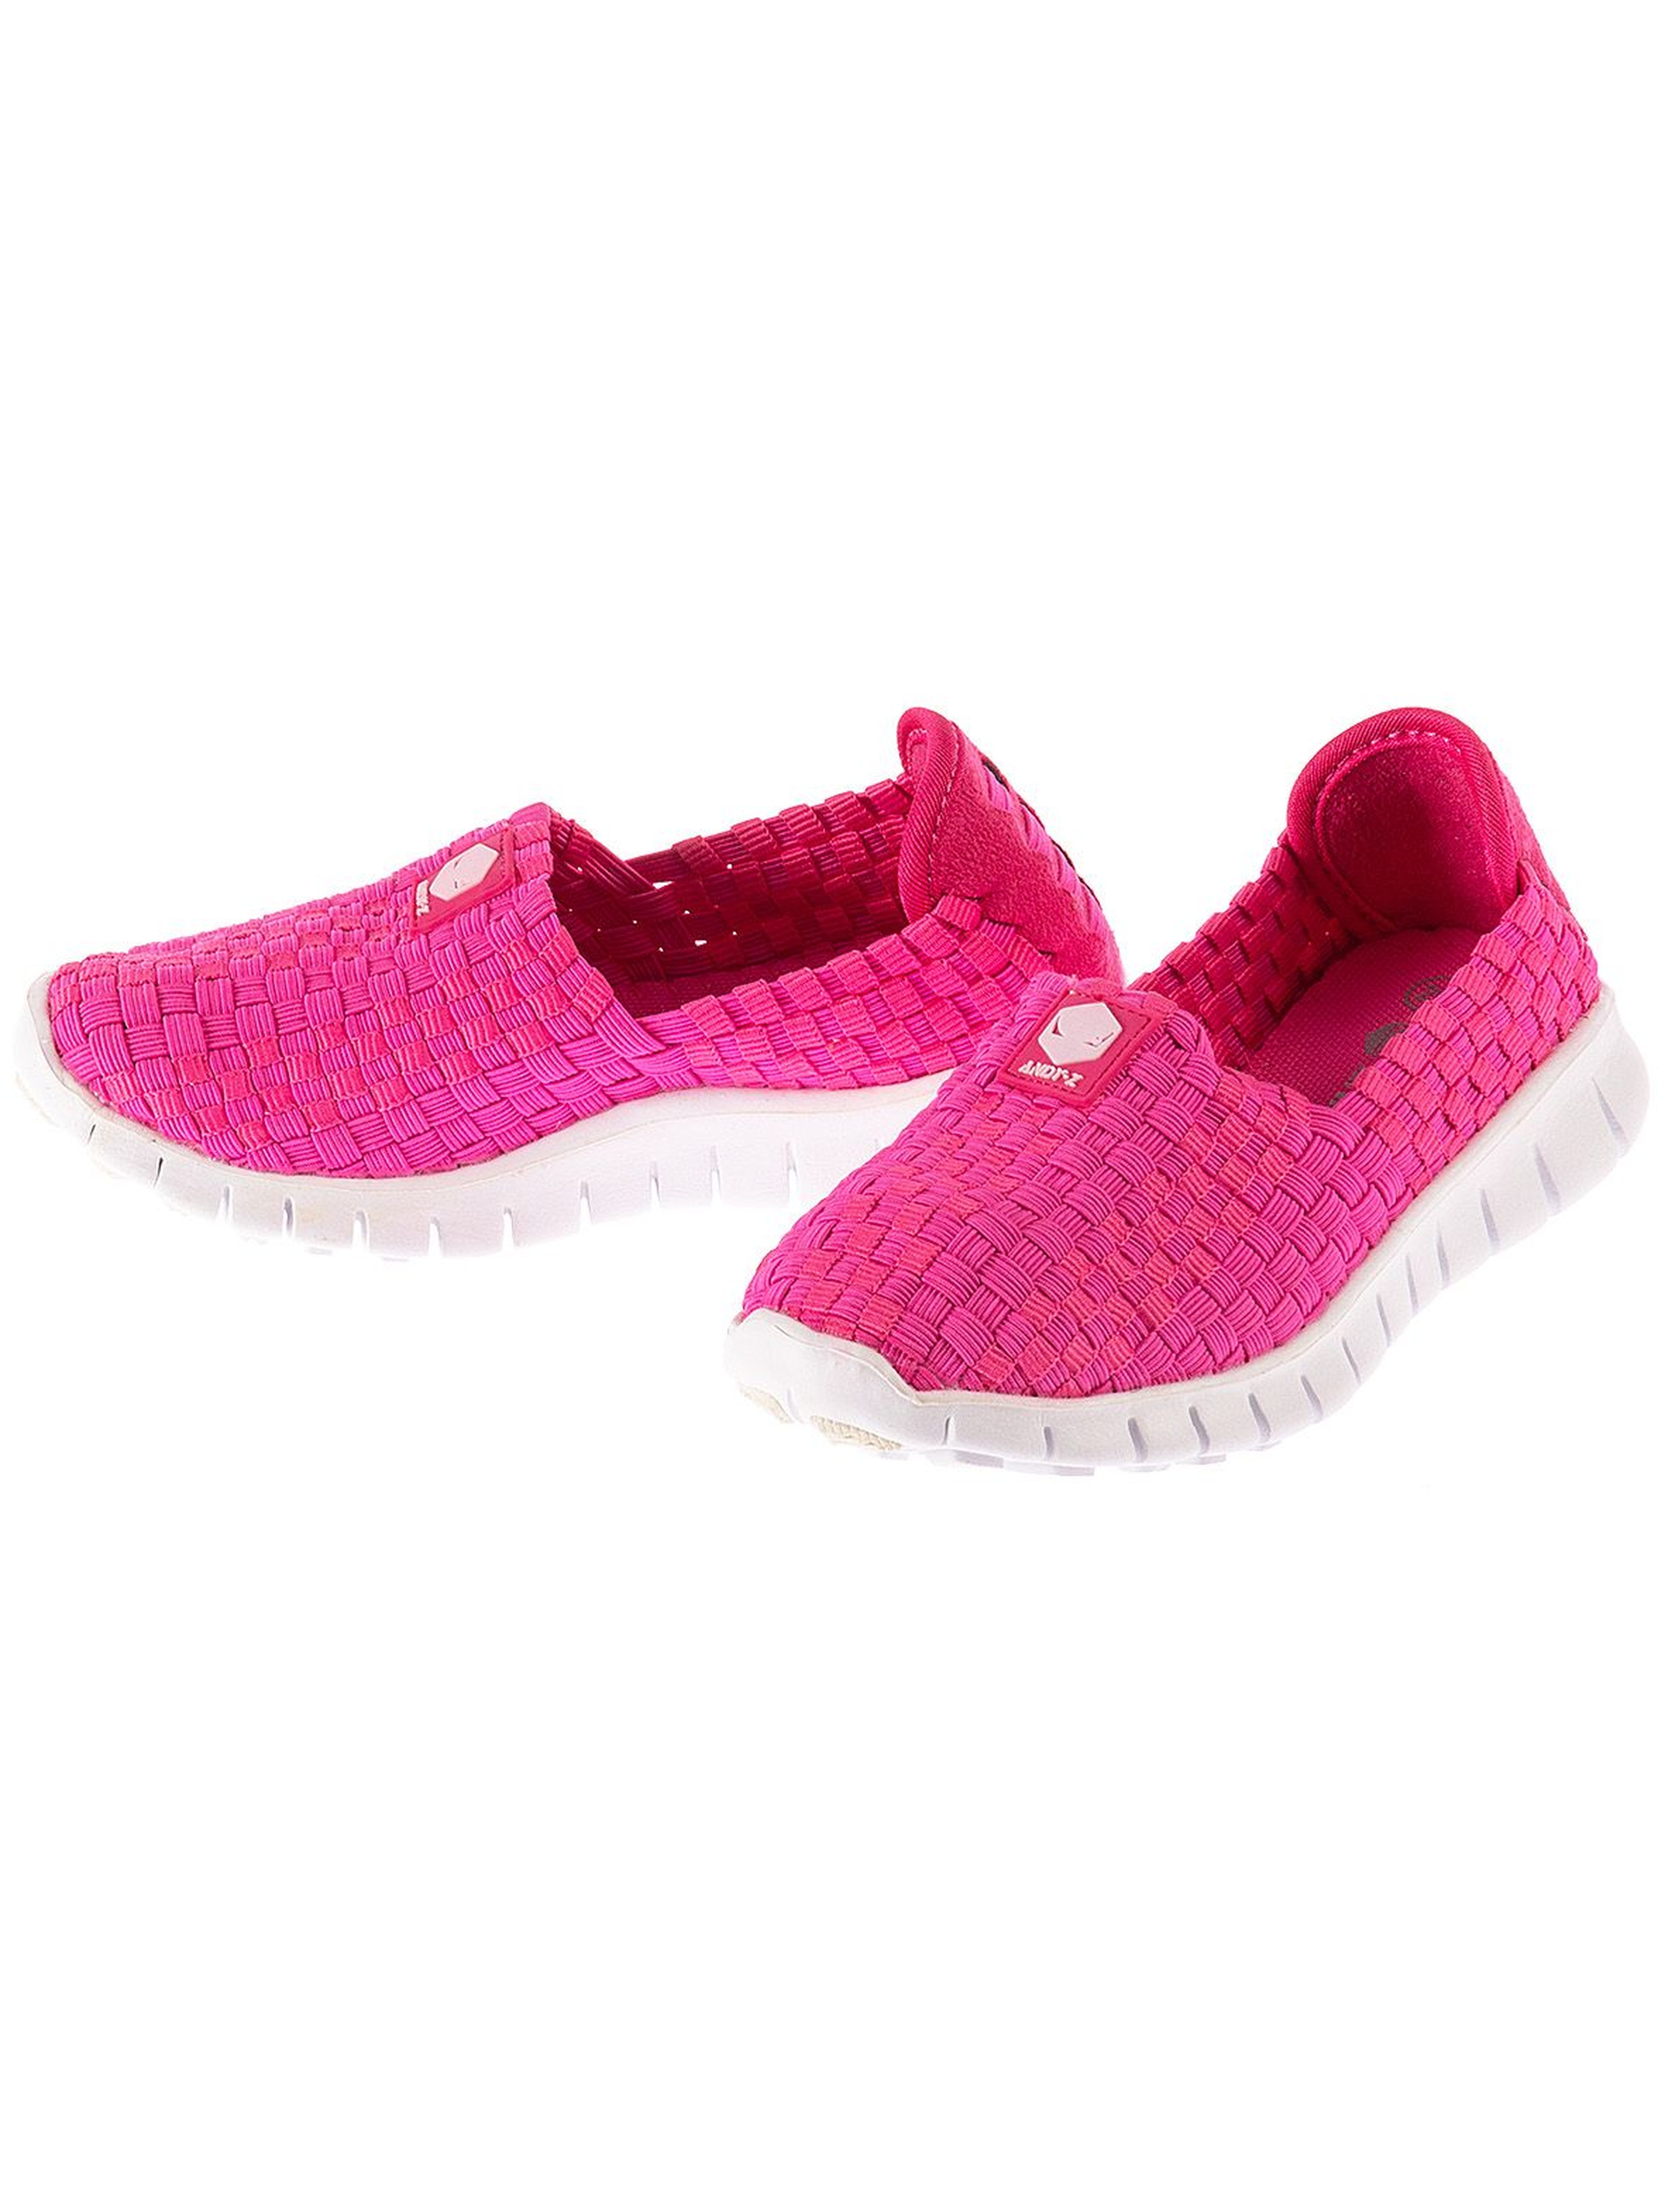 Buty sportowe dla dziewczynki- różowe